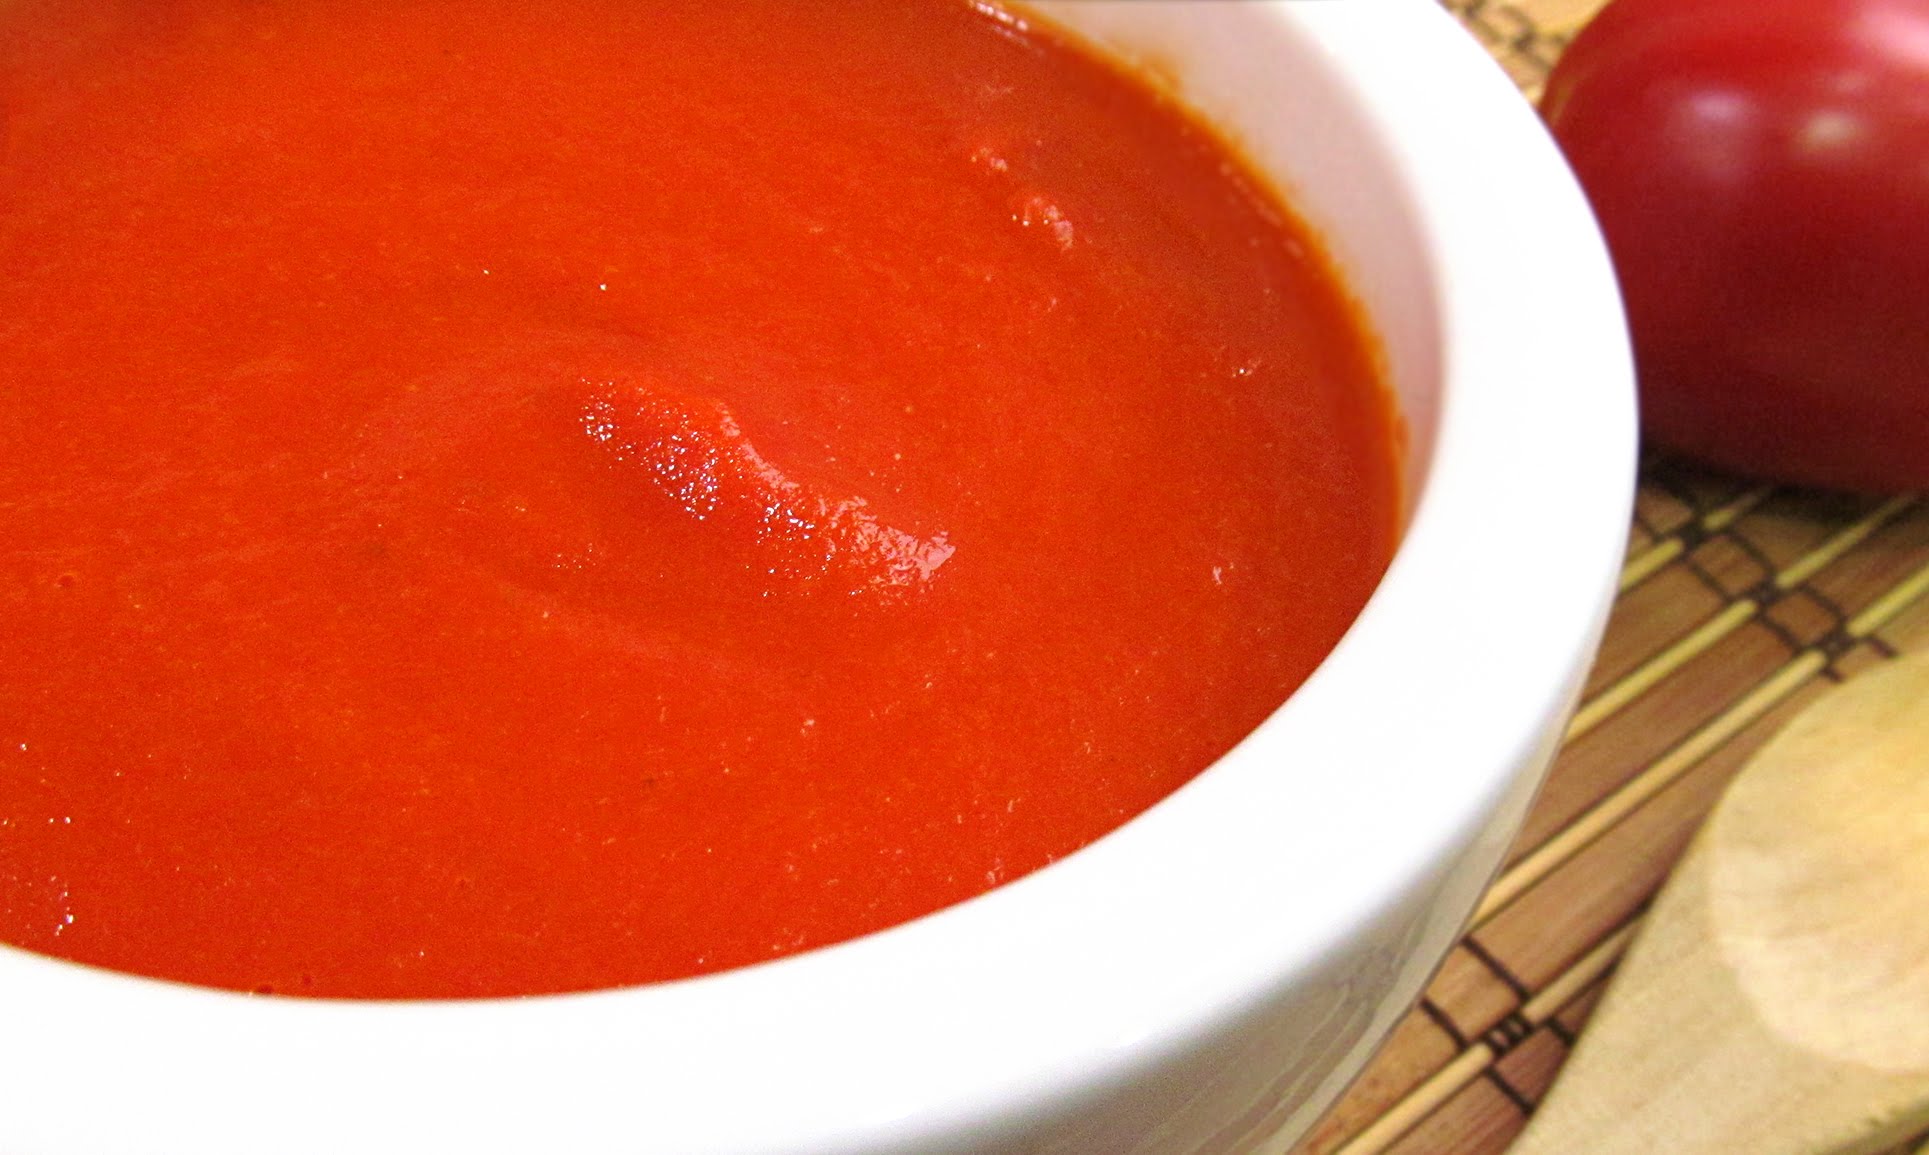 ¿Cómo hacer salsa de tomate casera?